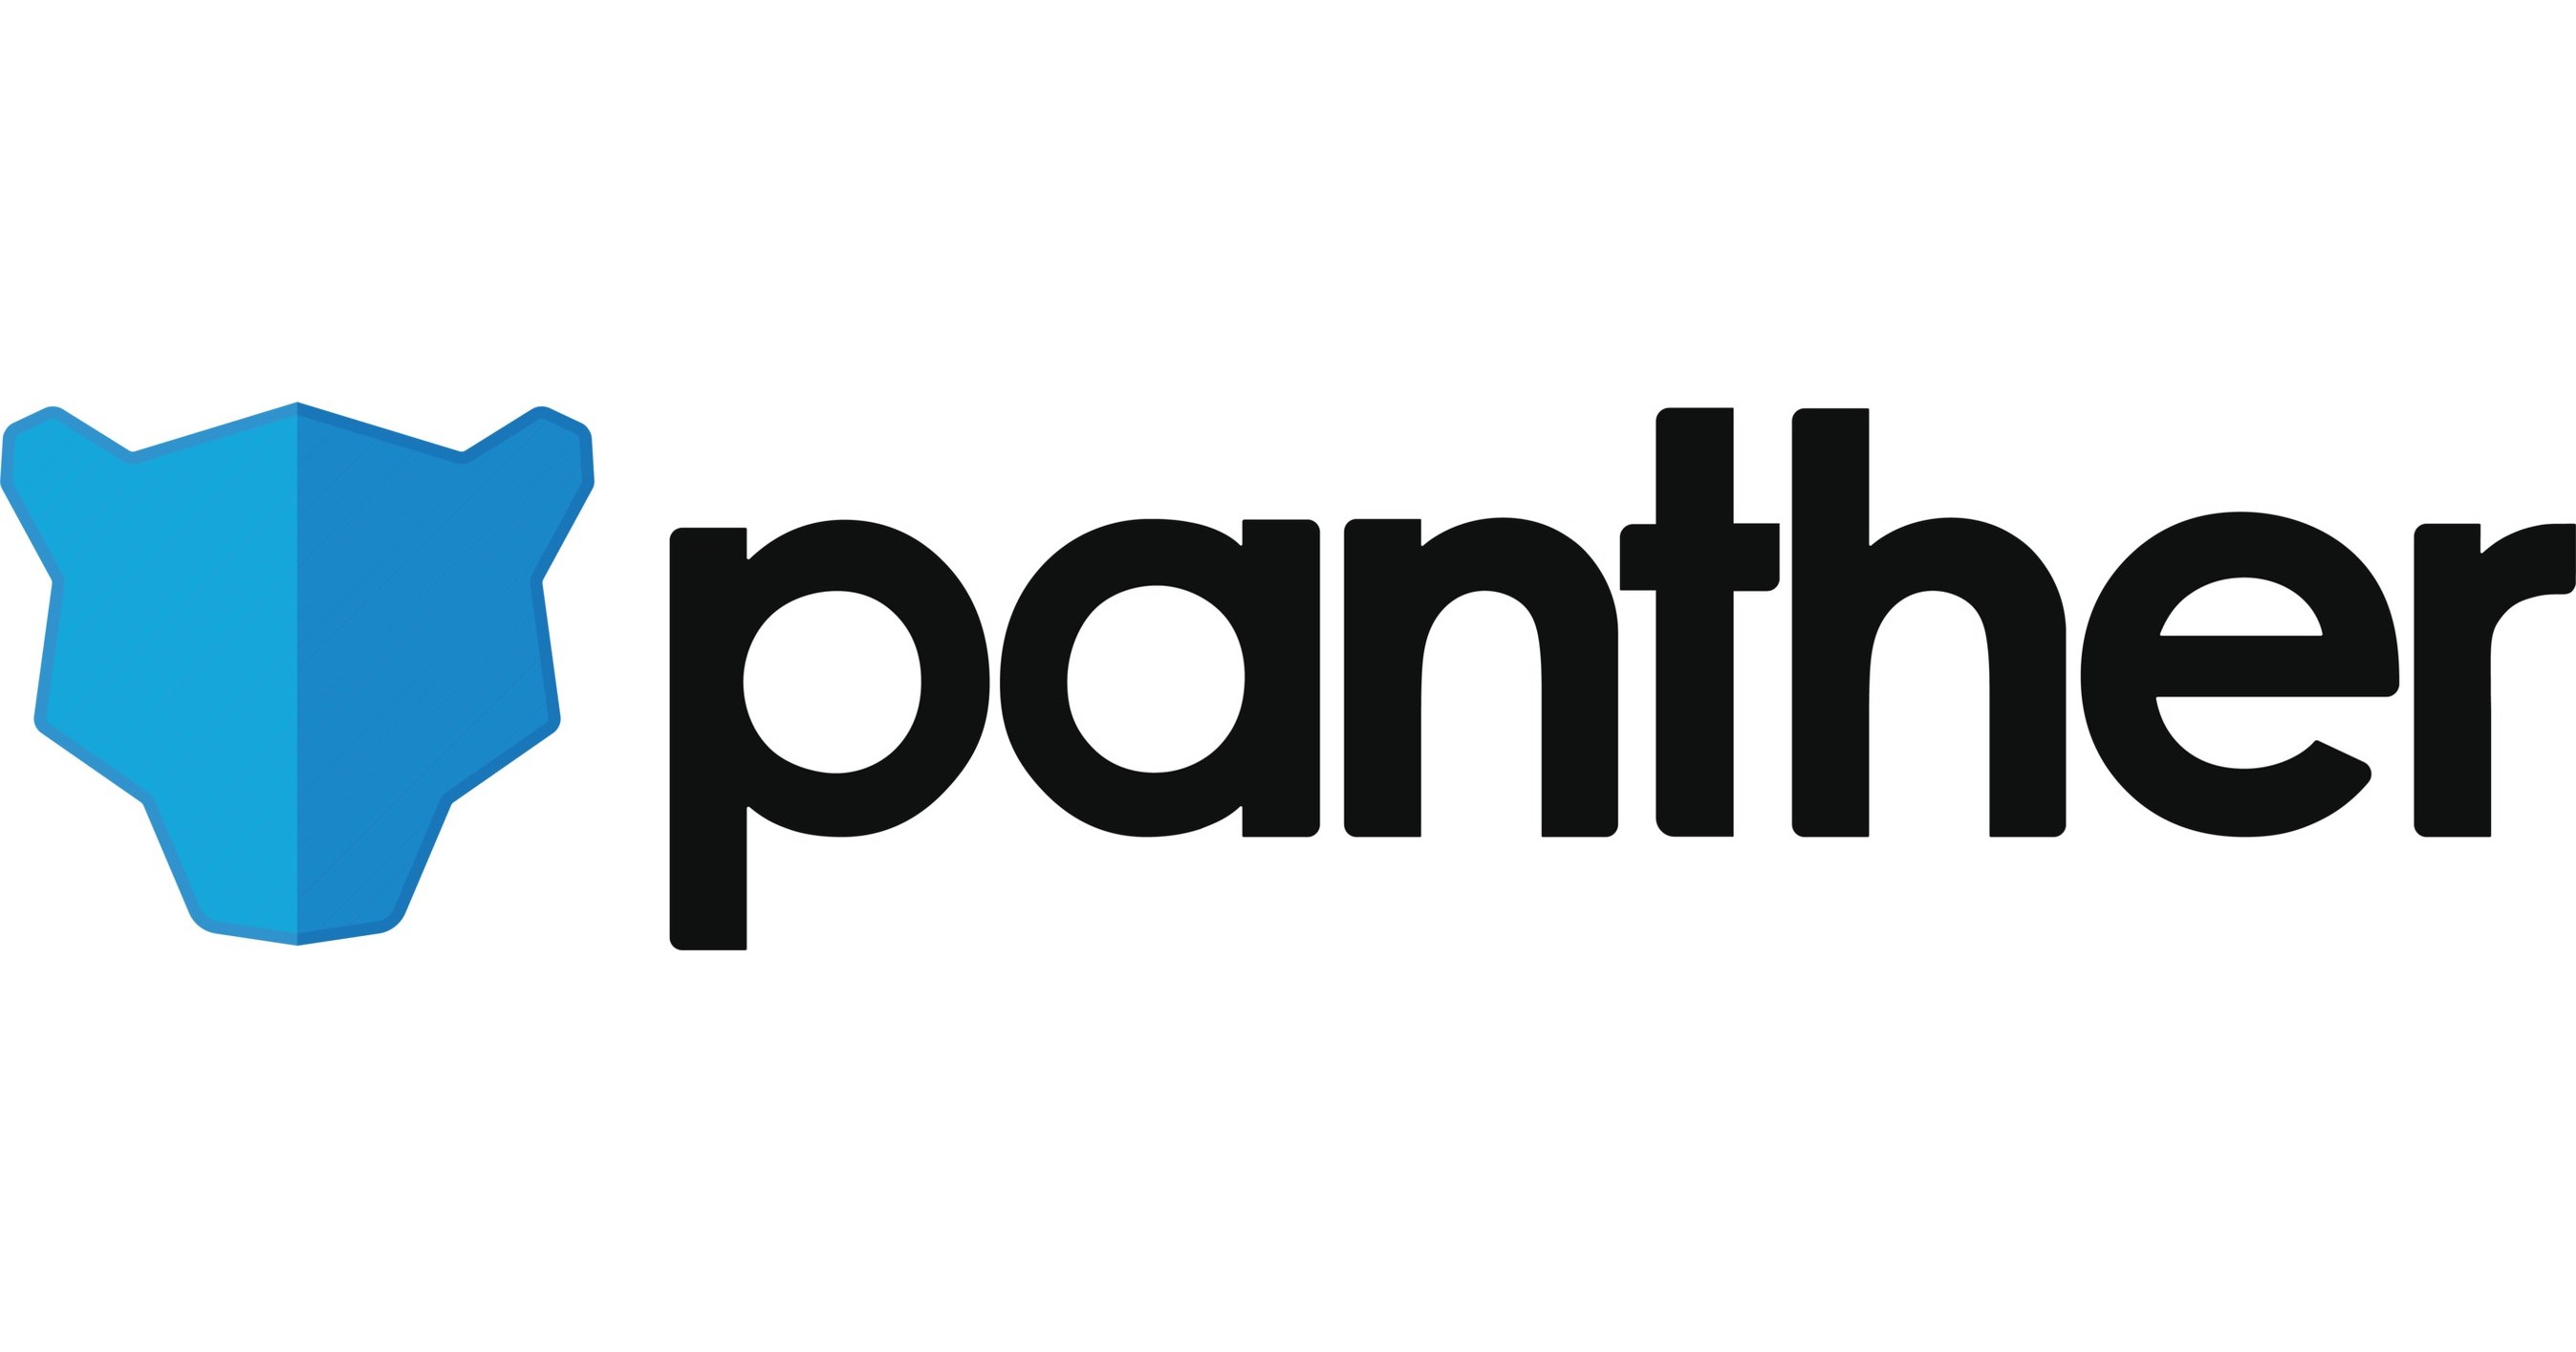 PANTHER